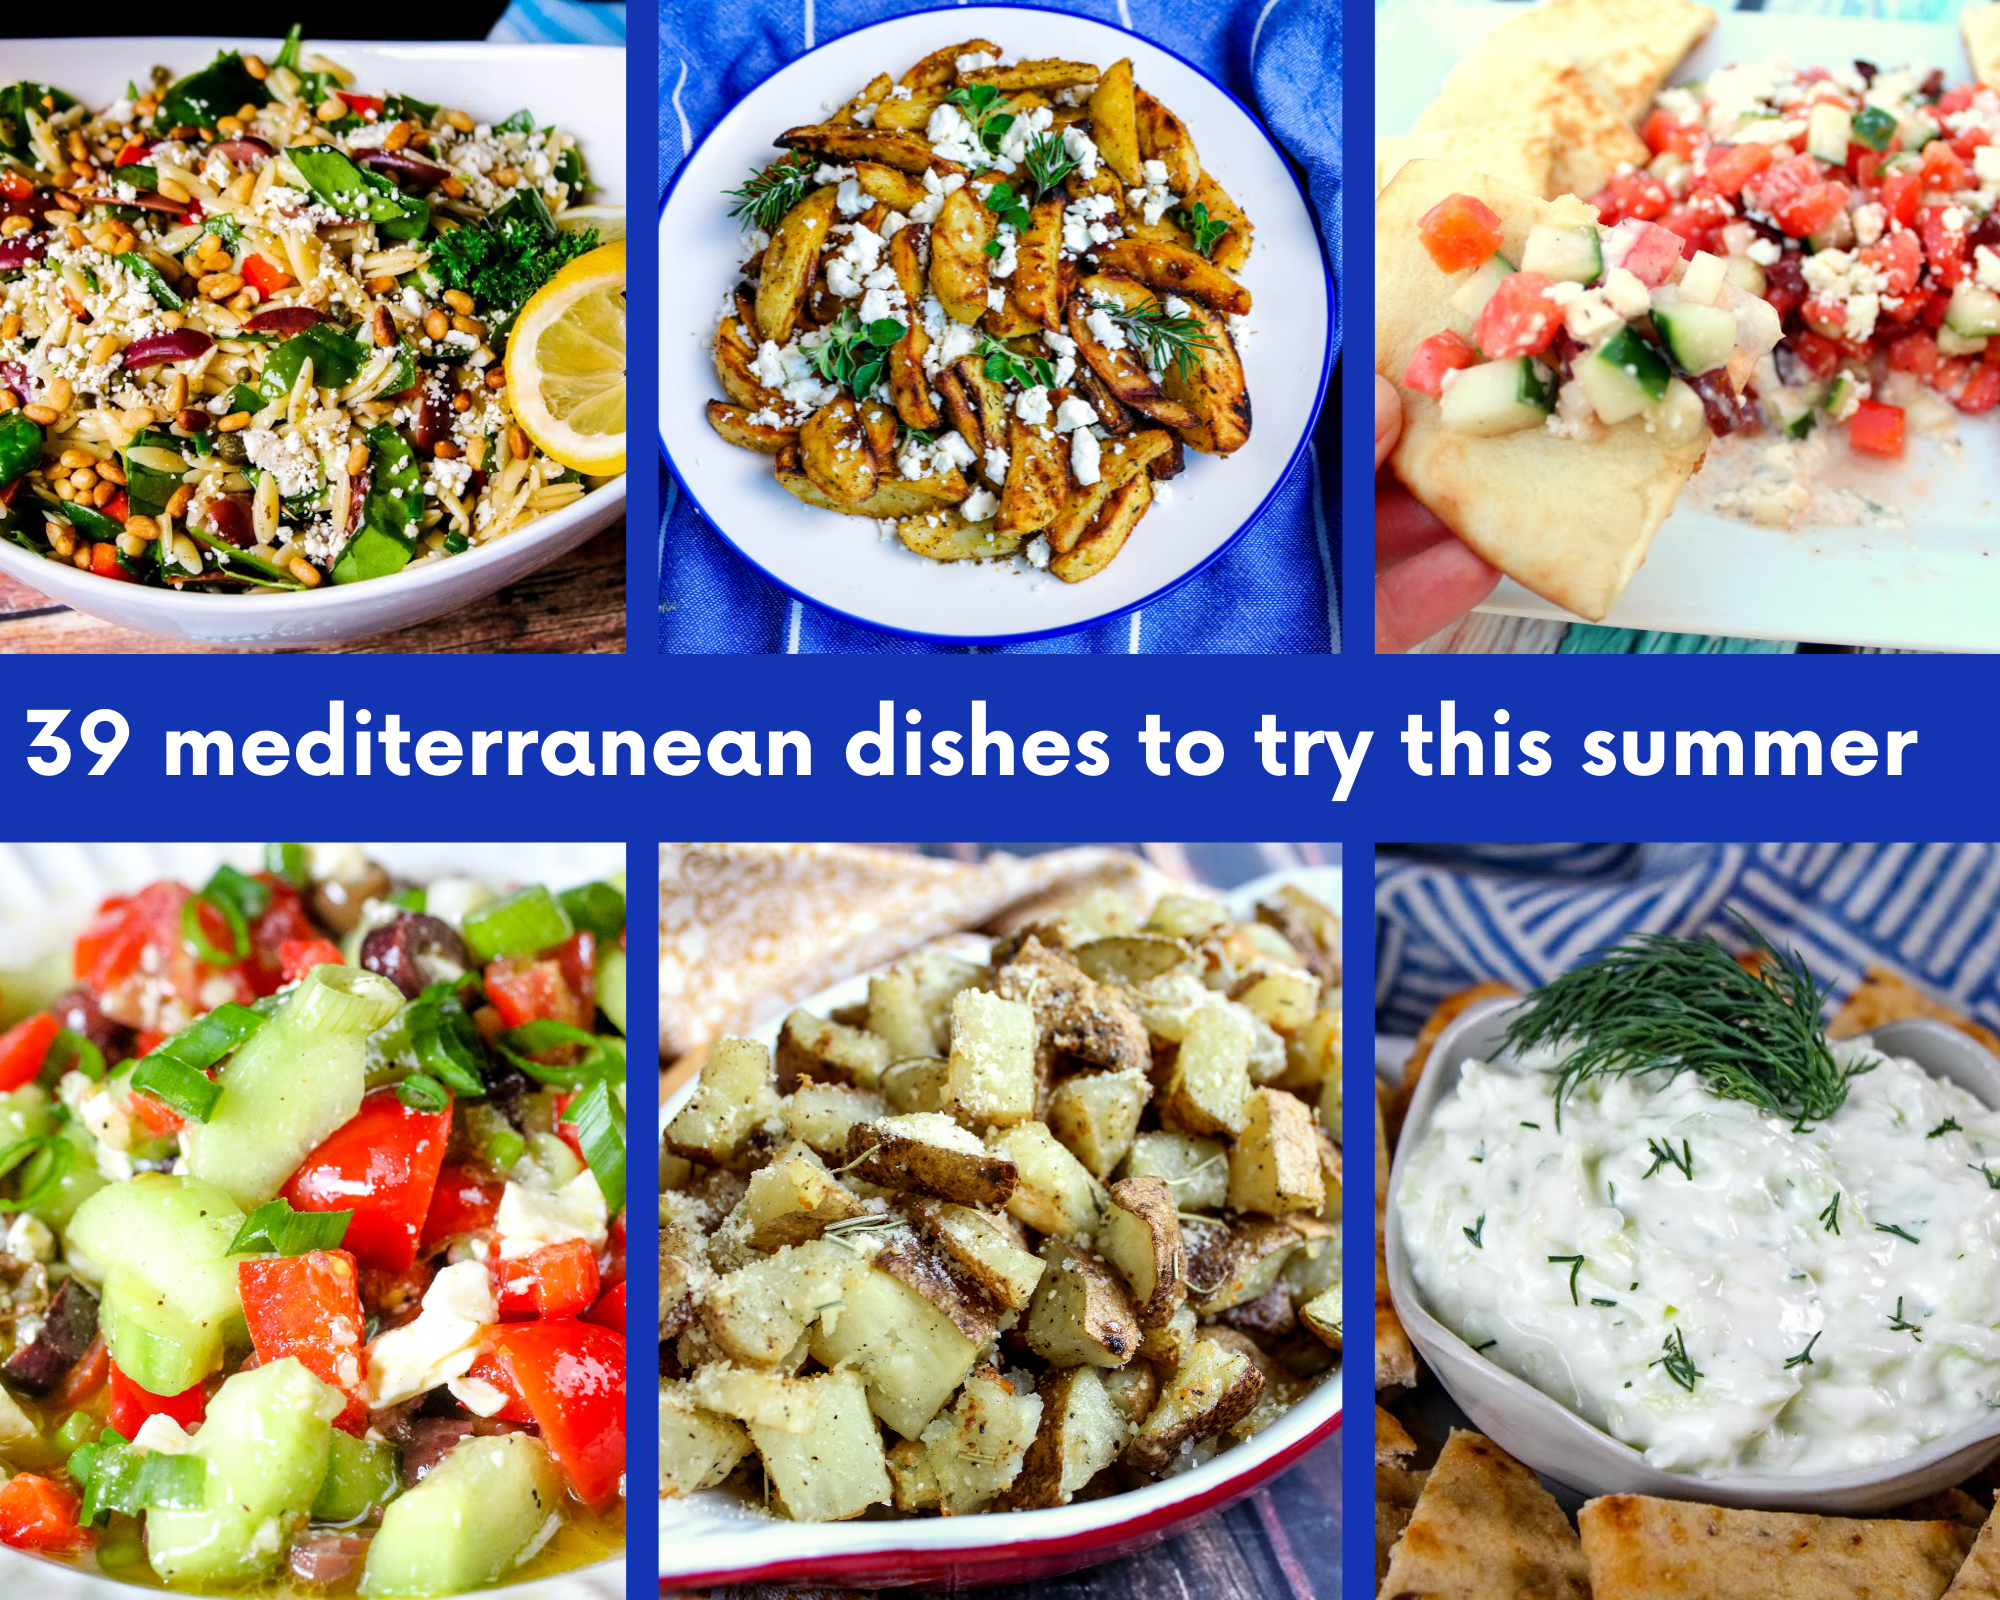 Mediterranean Dishes